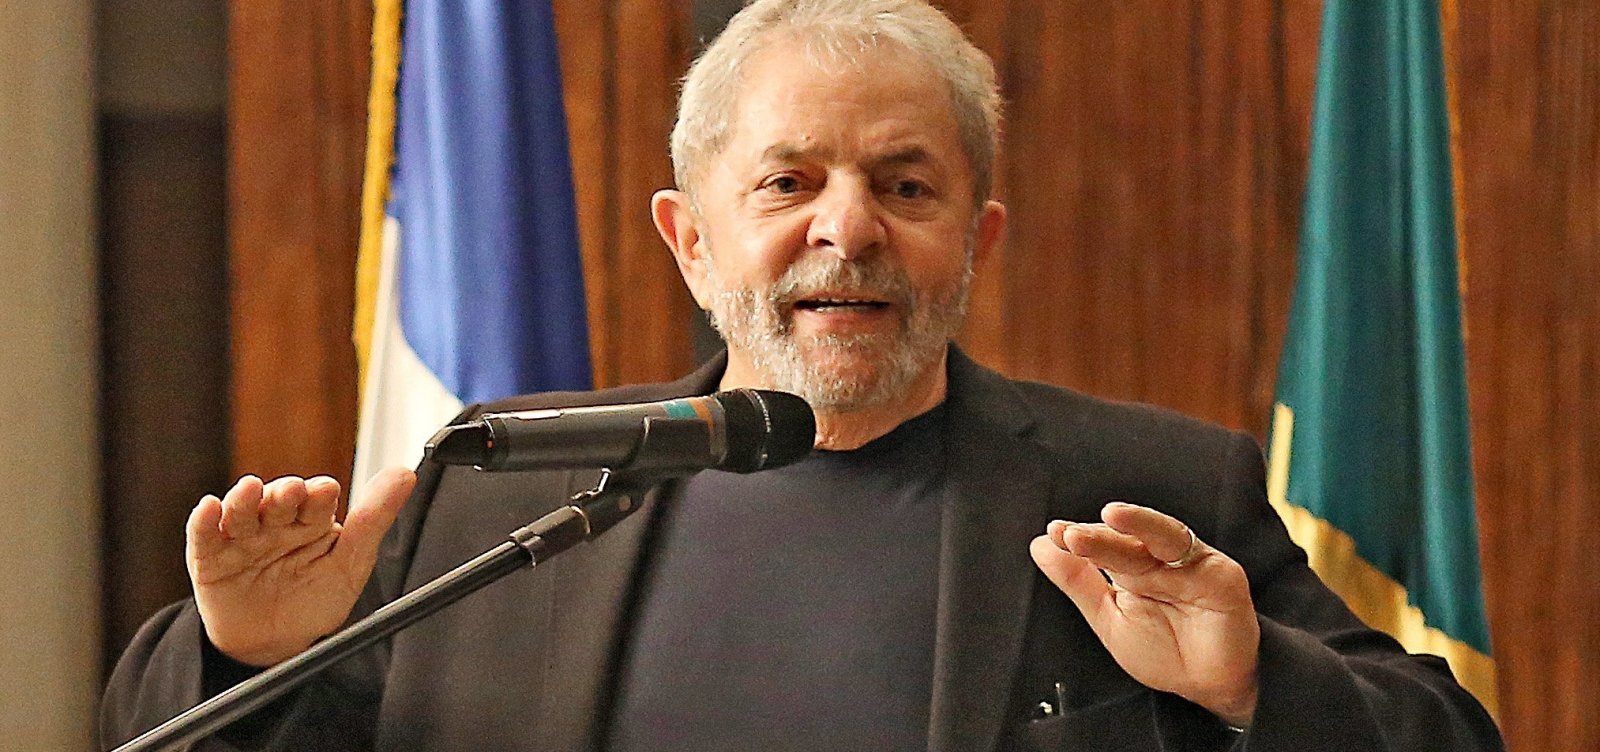 Procuradoria denuncia Lula e Boulos por invasão do tríplex de Guarujá